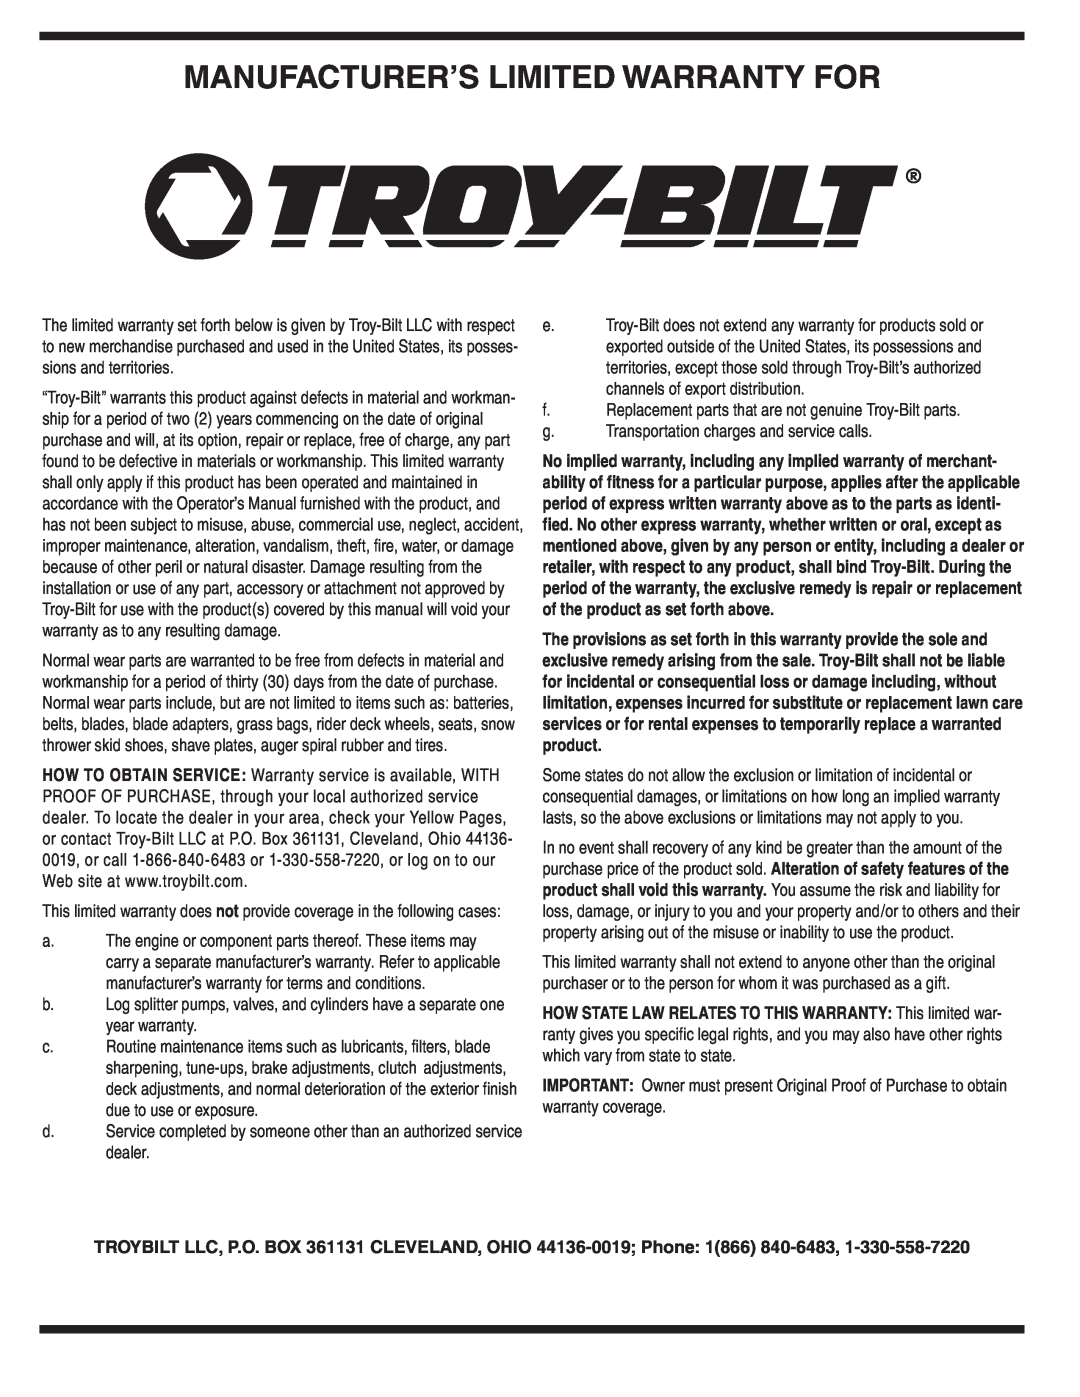 Troy-Bilt 420 warranty Manufacturer’S Limited Warranty For 